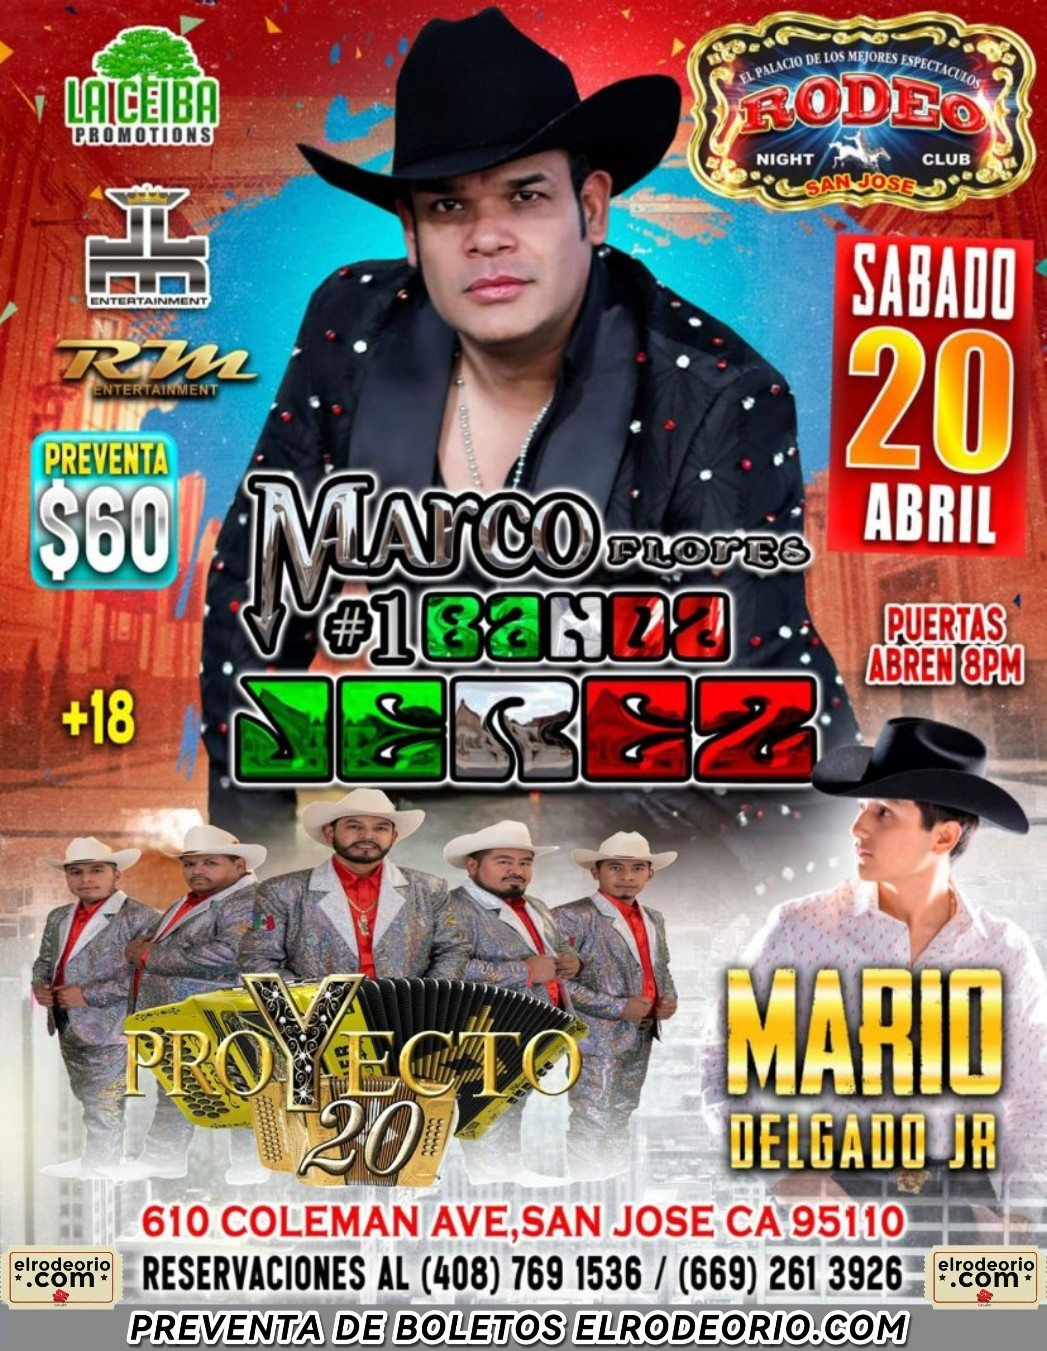 Marco Flores y La  #1 Banda Jerez y Mario Delgado Jr.  on Apr 20, 20:00@Club Rodeo - Buy tickets and Get information on elrodeorio.com sanjoseentertainment